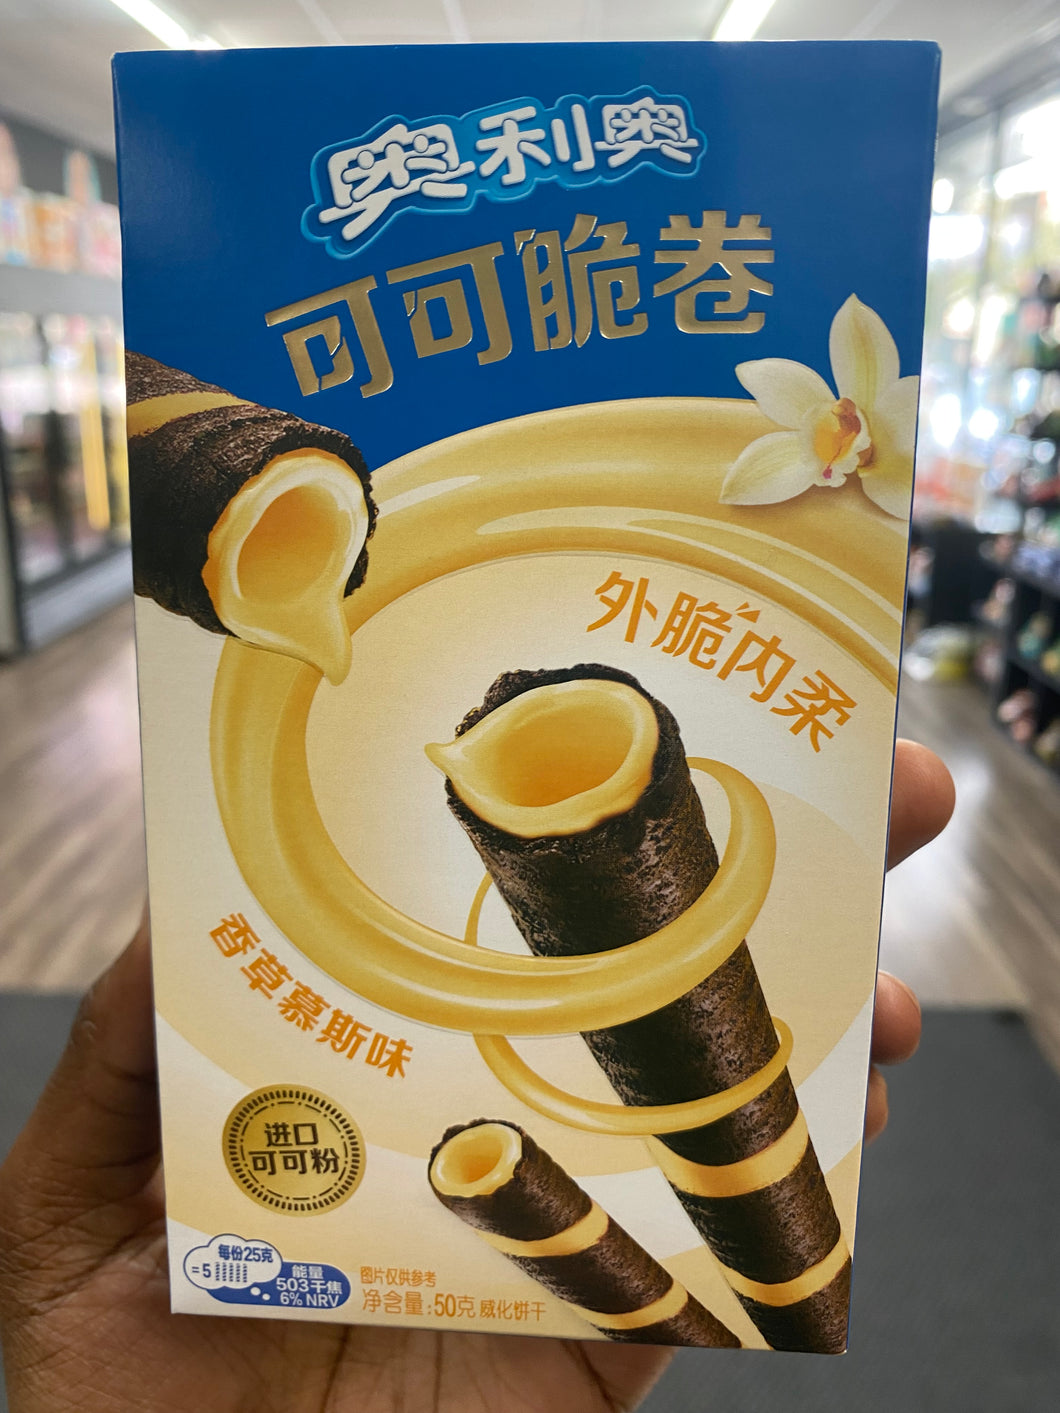 Oreo Wafer Roll Vanilla (China)